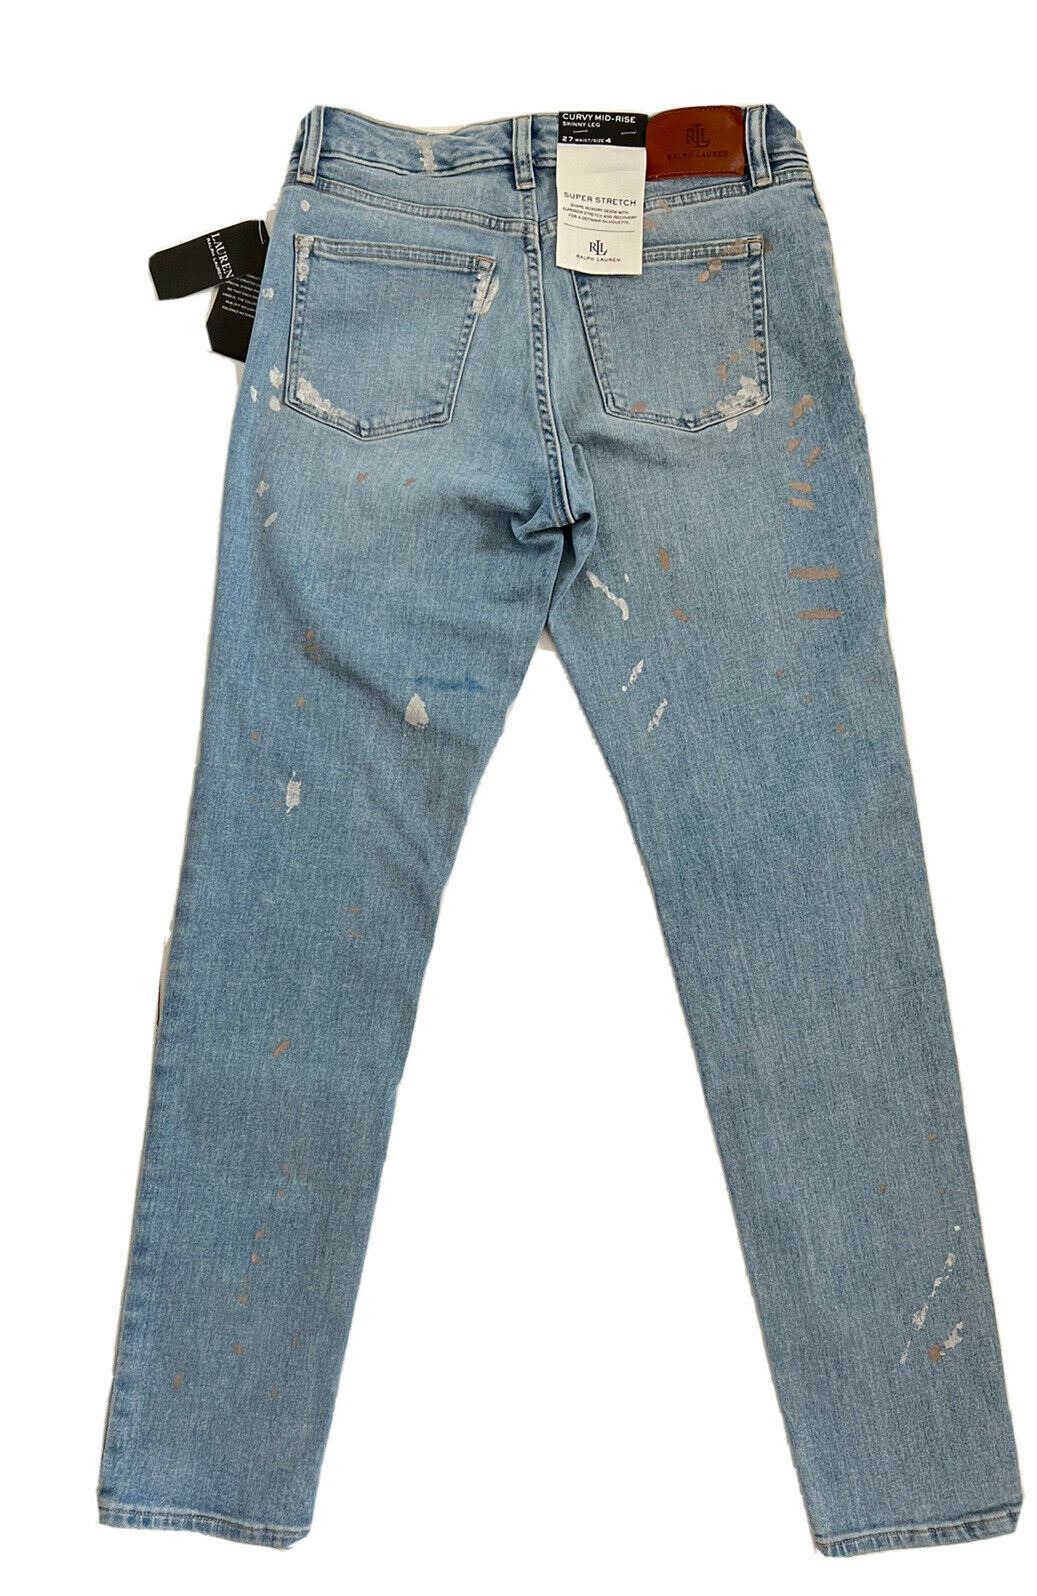 Синие джинсы скинни Lauren Ralph Lauren NWT $99,95, размер 4 (талия 27) 